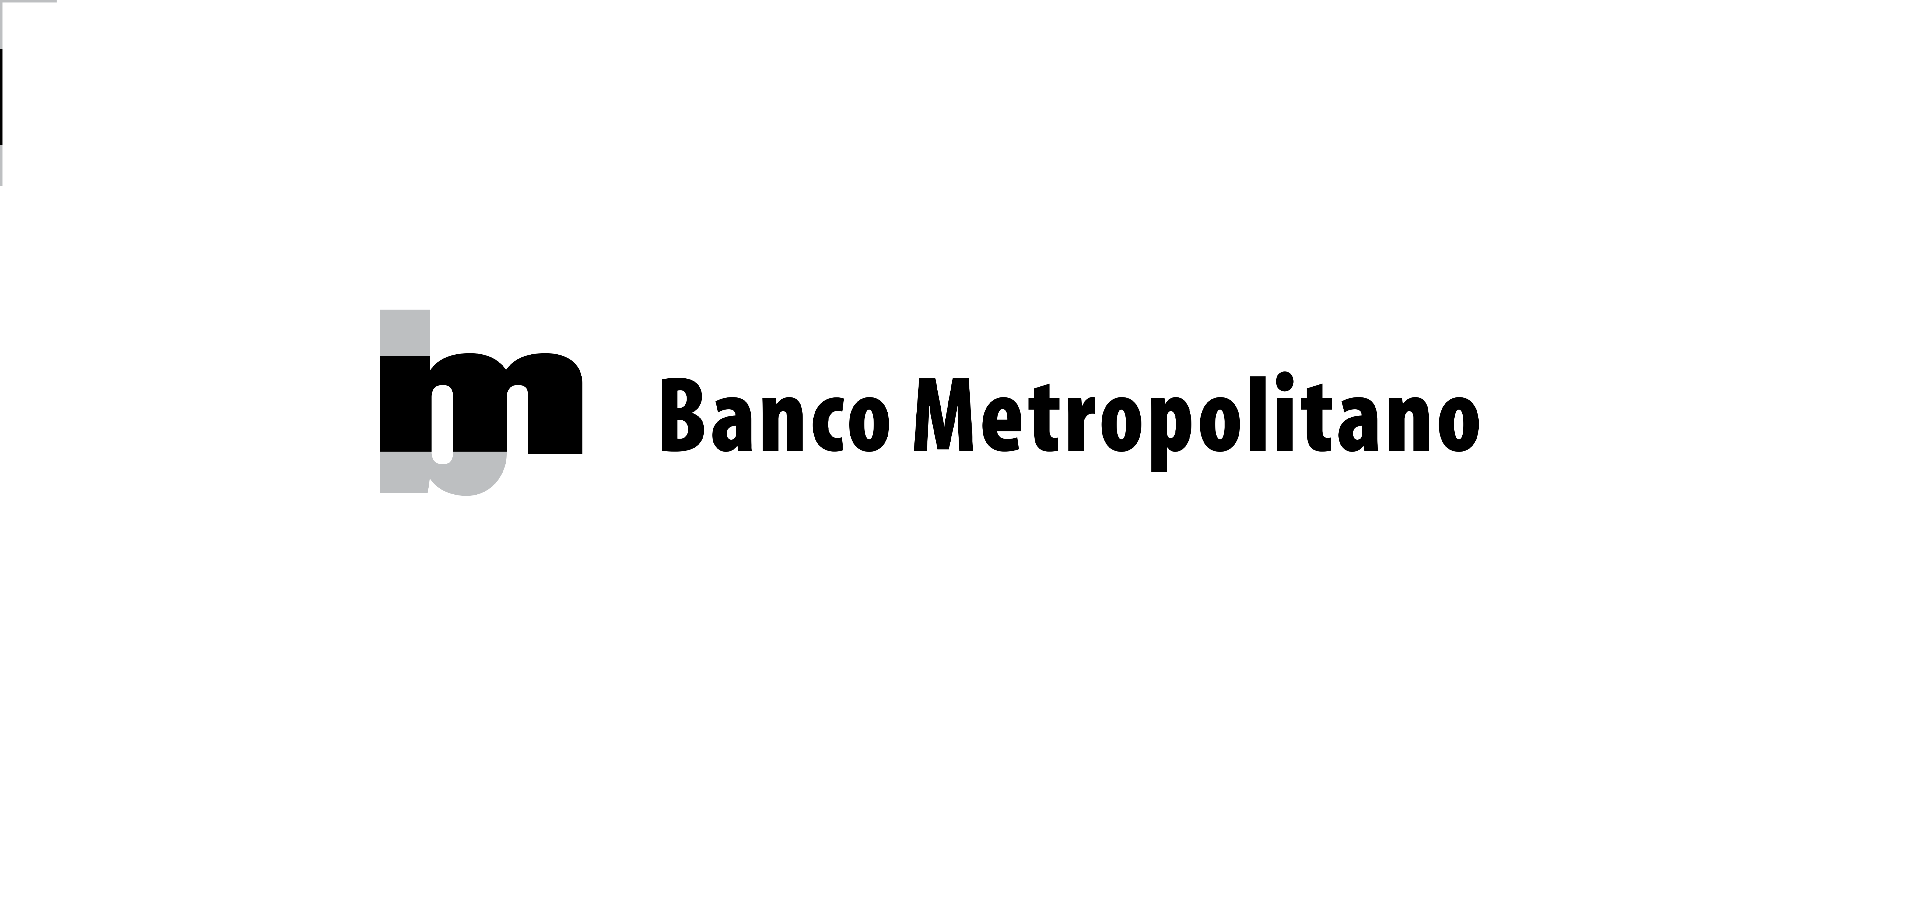 Banco Metropolitano S.A